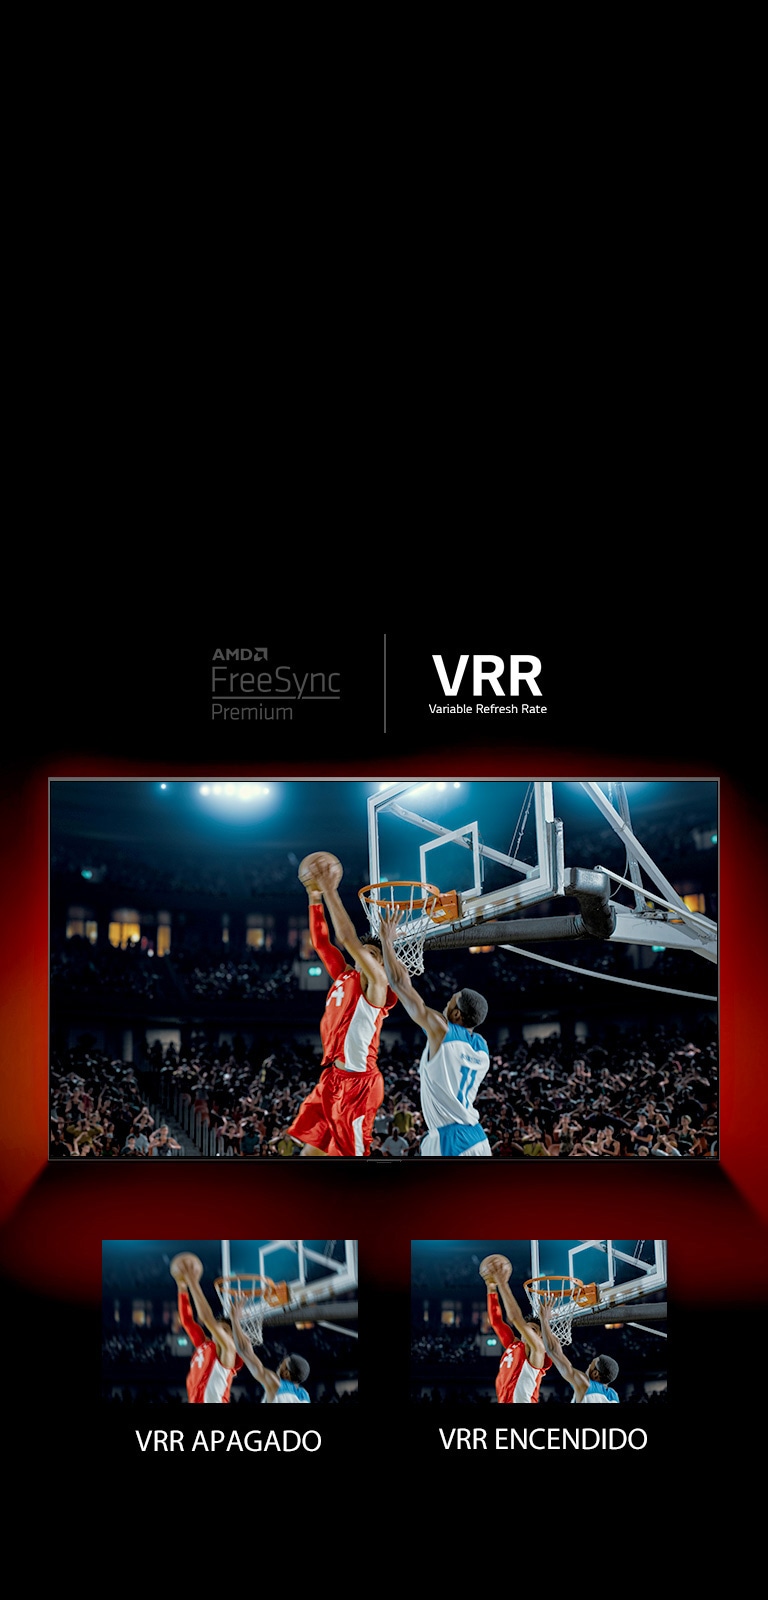 Hay un televisor QNED enfrentado a una pared roja: la imagen en pantalla muestra un juego de baloncesto con dos jugadores. Debajo, hay dos cuadros de imagen. El de la izquierda dice VRR APAGADO y muestra la imagen de arriba borrosa, y el de la derecha dice VRR ENCENDIDO y muestra esa misma imagen.